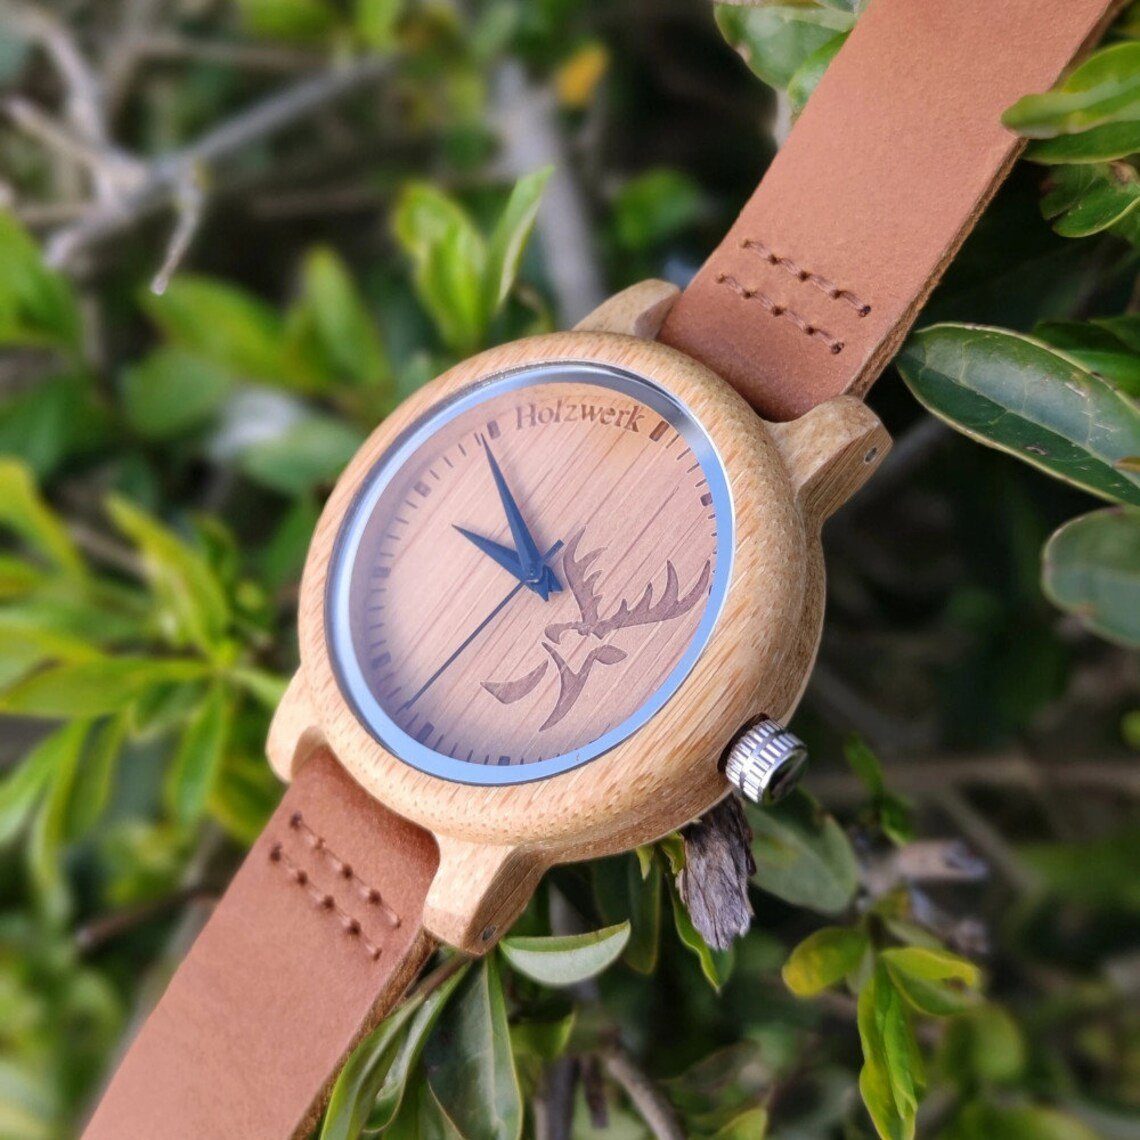 Holz Leder beige Holzwerk Armband Uhr, Damen Hirsch kleine Quarzuhr & Logo, GERA braun,